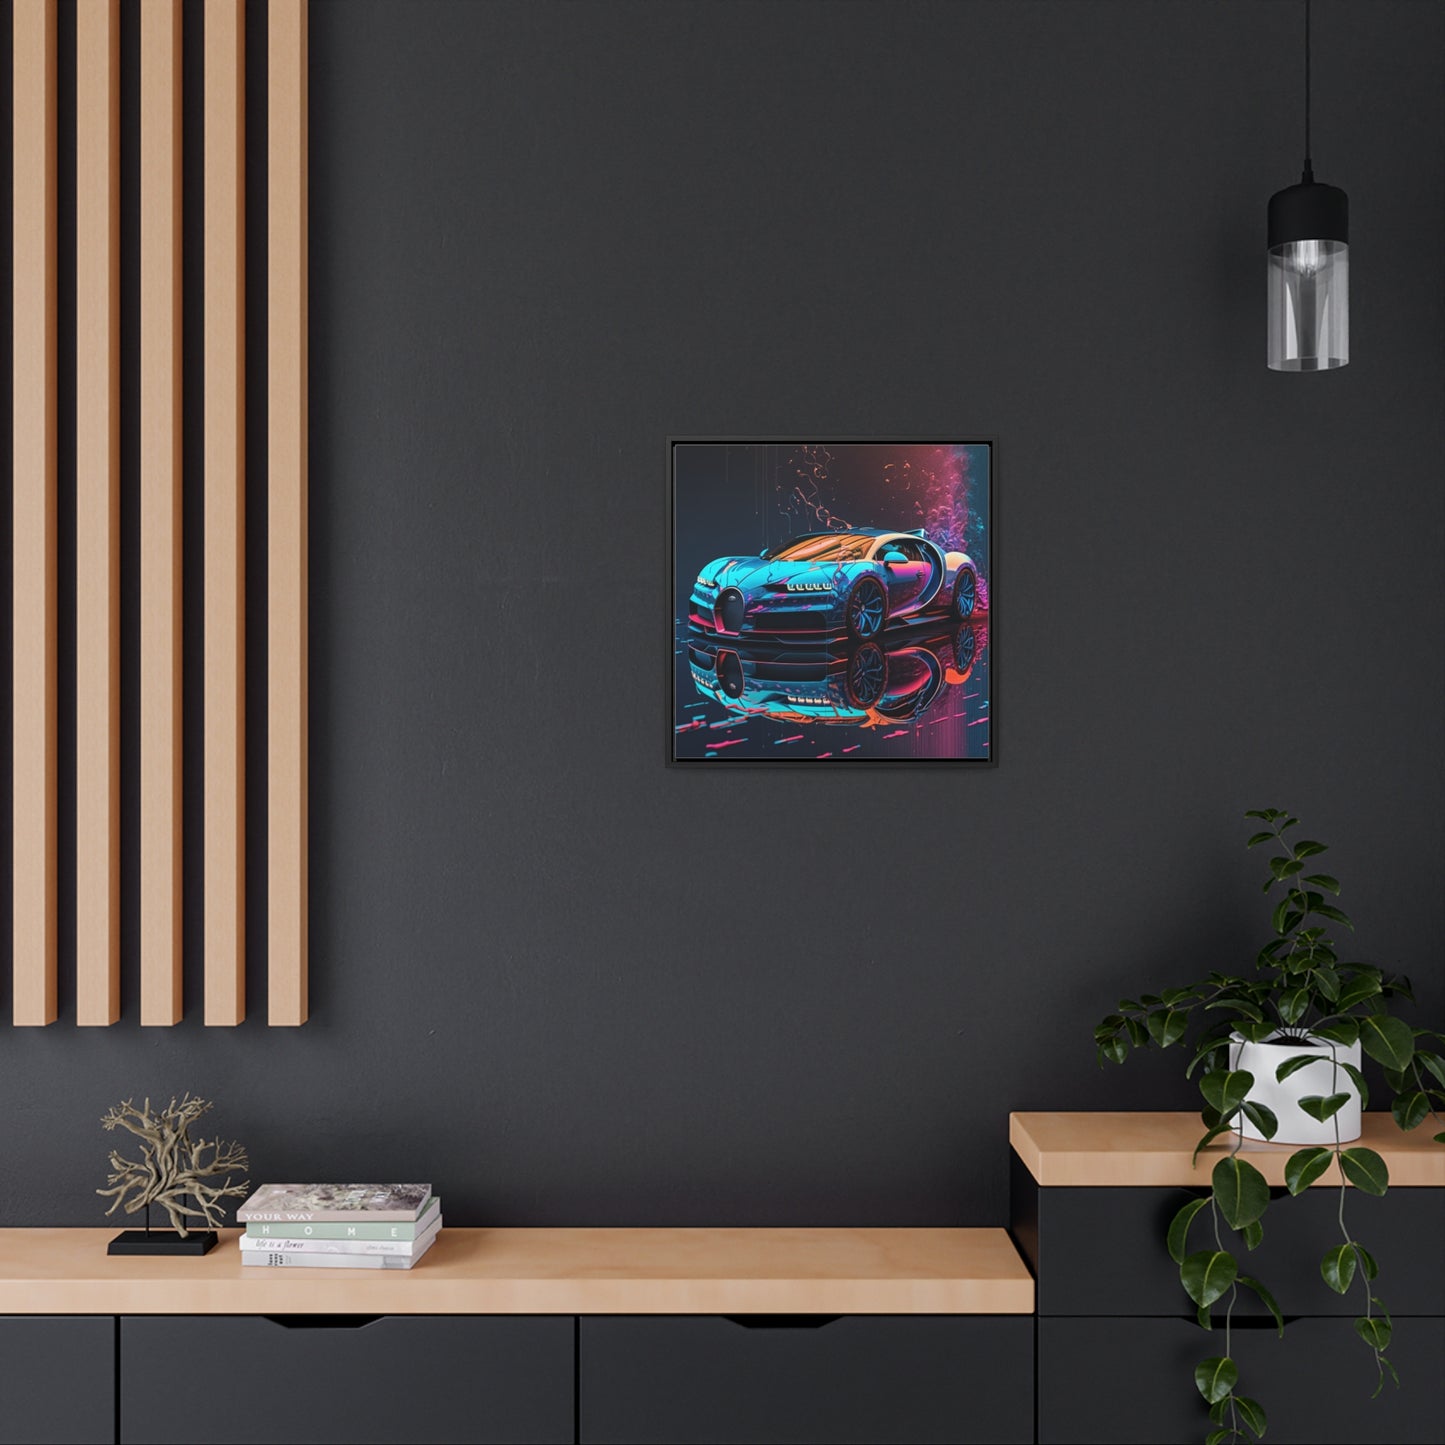 Gallery Canvas Wraps, Square Frame Bugatti Neon Chiron 4